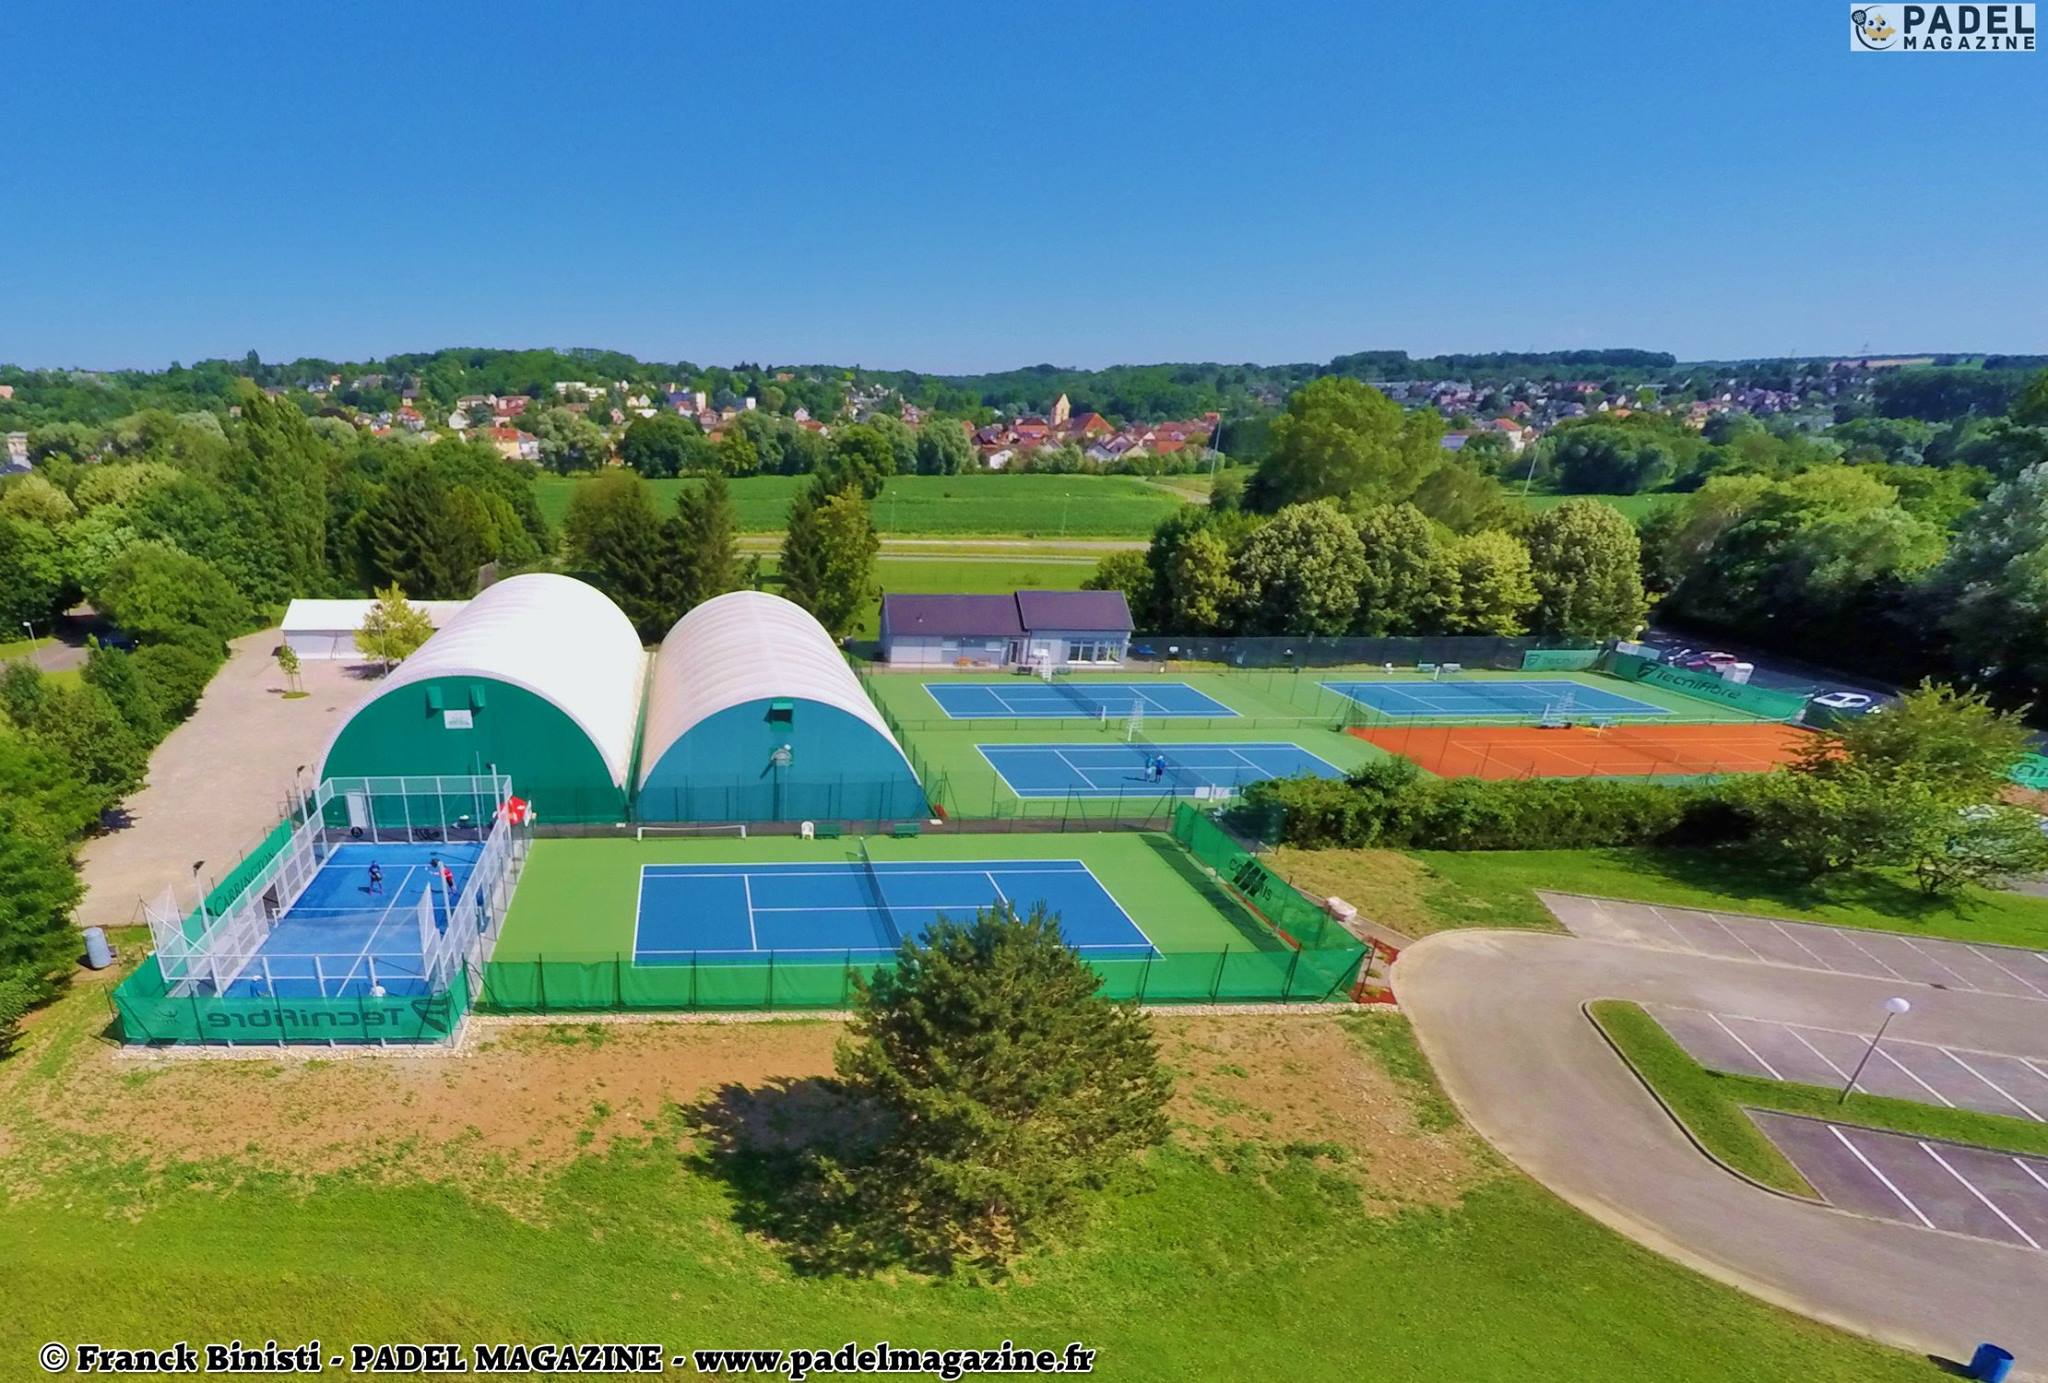 Tennis club de Brunstatt